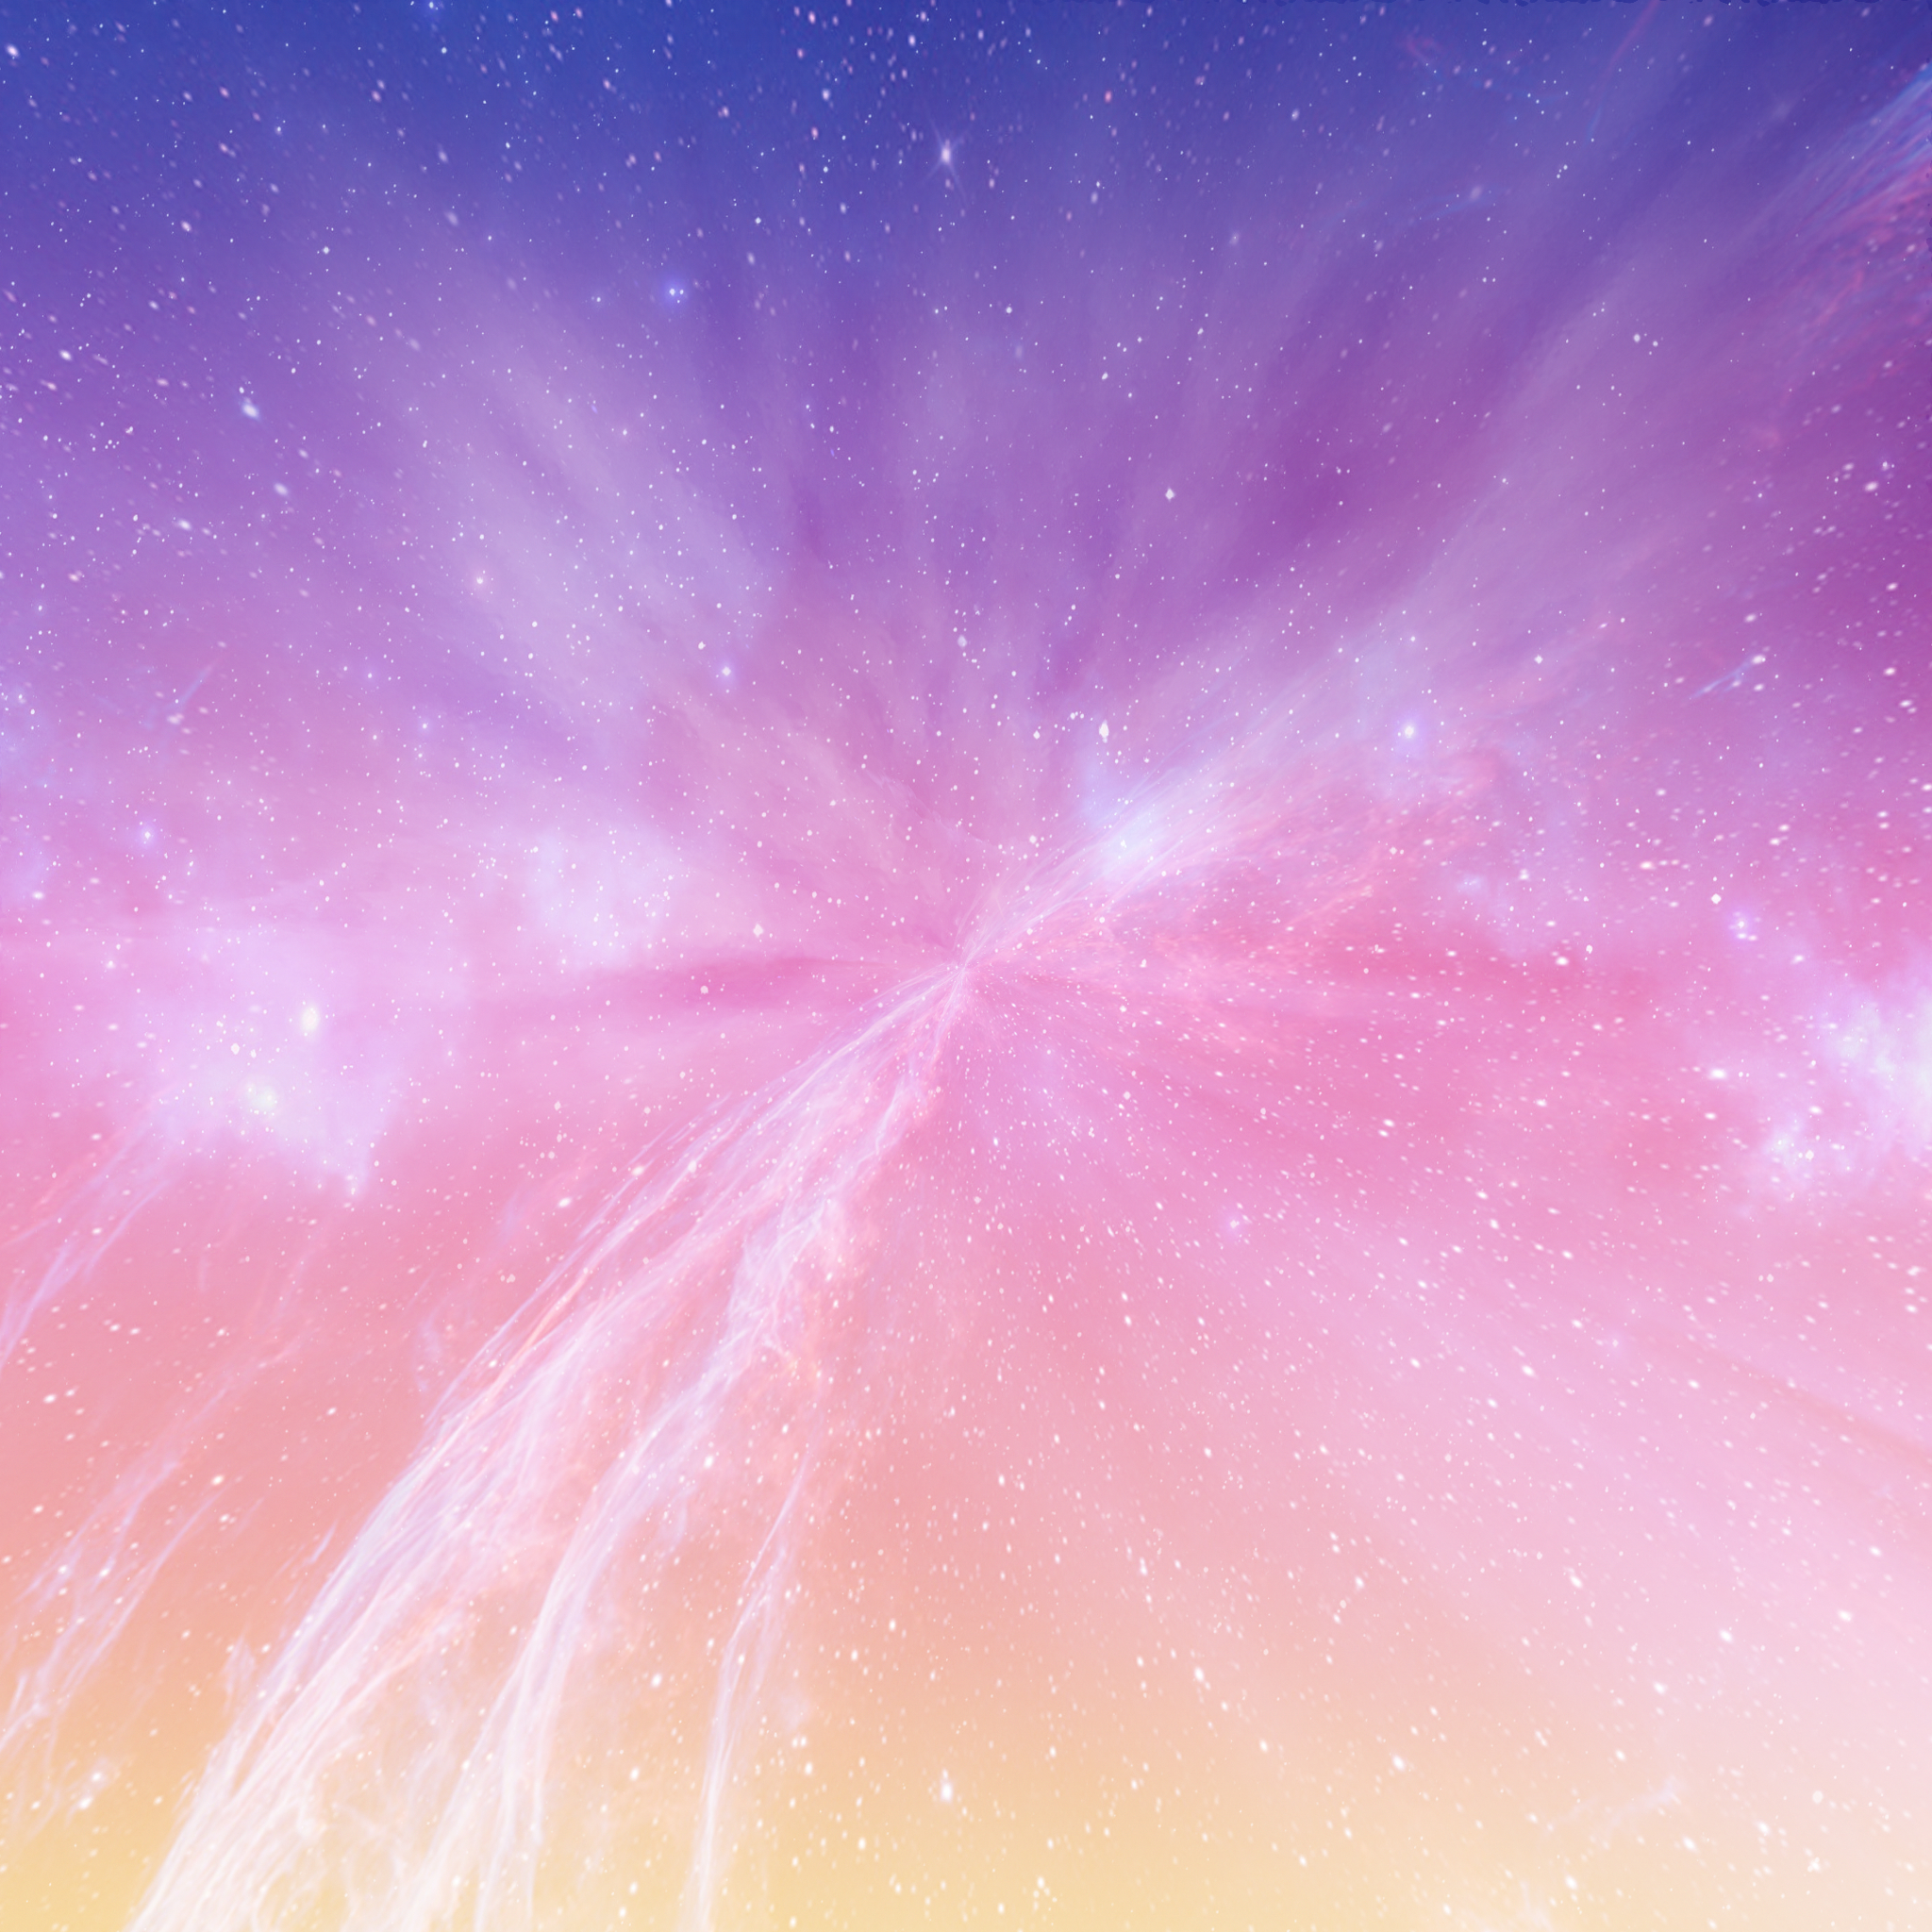 銀河の壁紙,空,ピンク,雰囲気,紫の,スペース